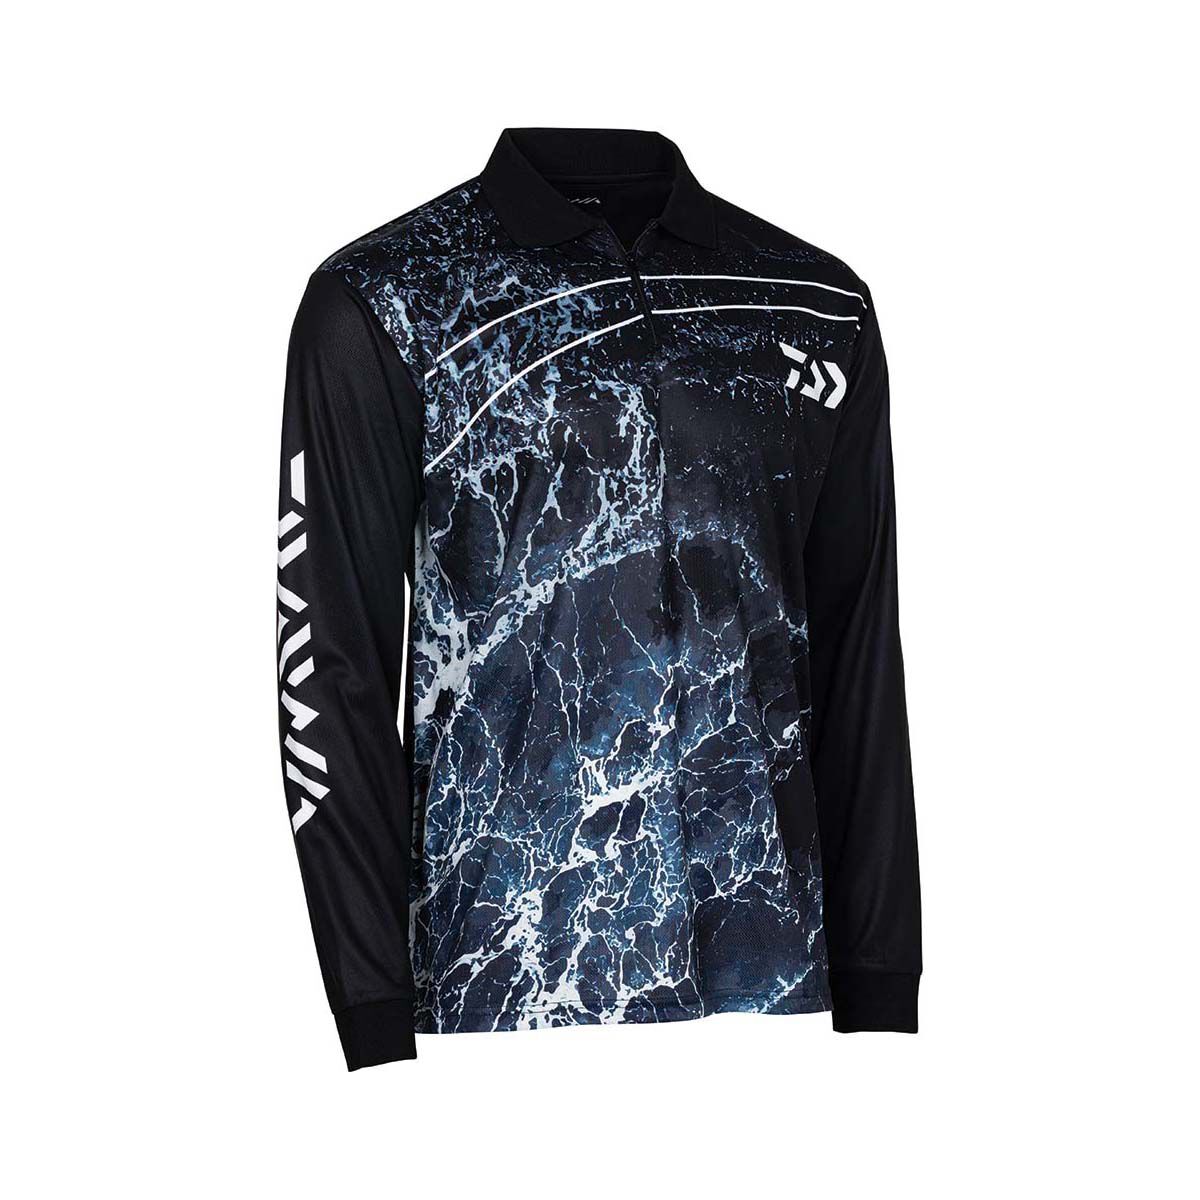 Daiwa Sublimated Shirt ◂ The KingFisher